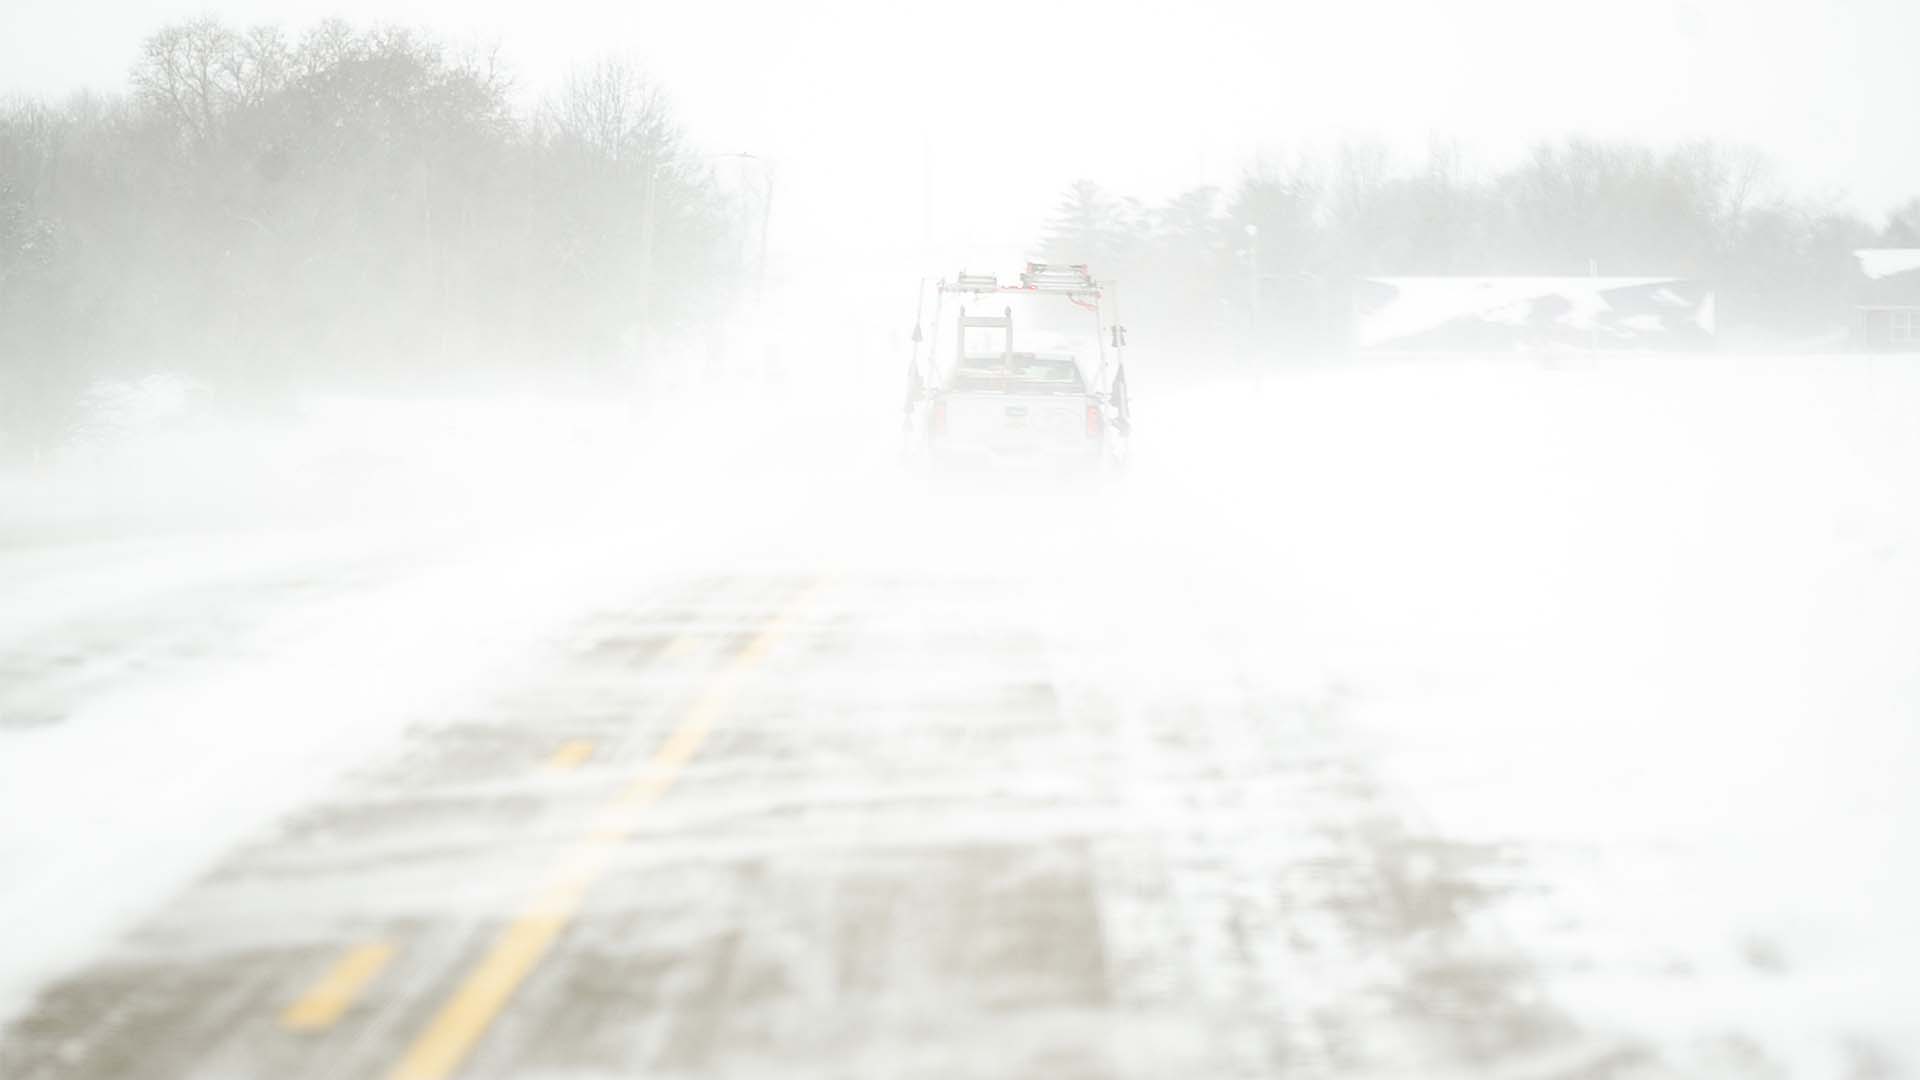 Le vent souffle sur une route verglacée le jeudi 22 décembre 2022, à North Liberty, Iowa. Les températures ont chuté rapidement jeudi alors qu'une tempête hivernale s'est formée avant le week-end de Noël.